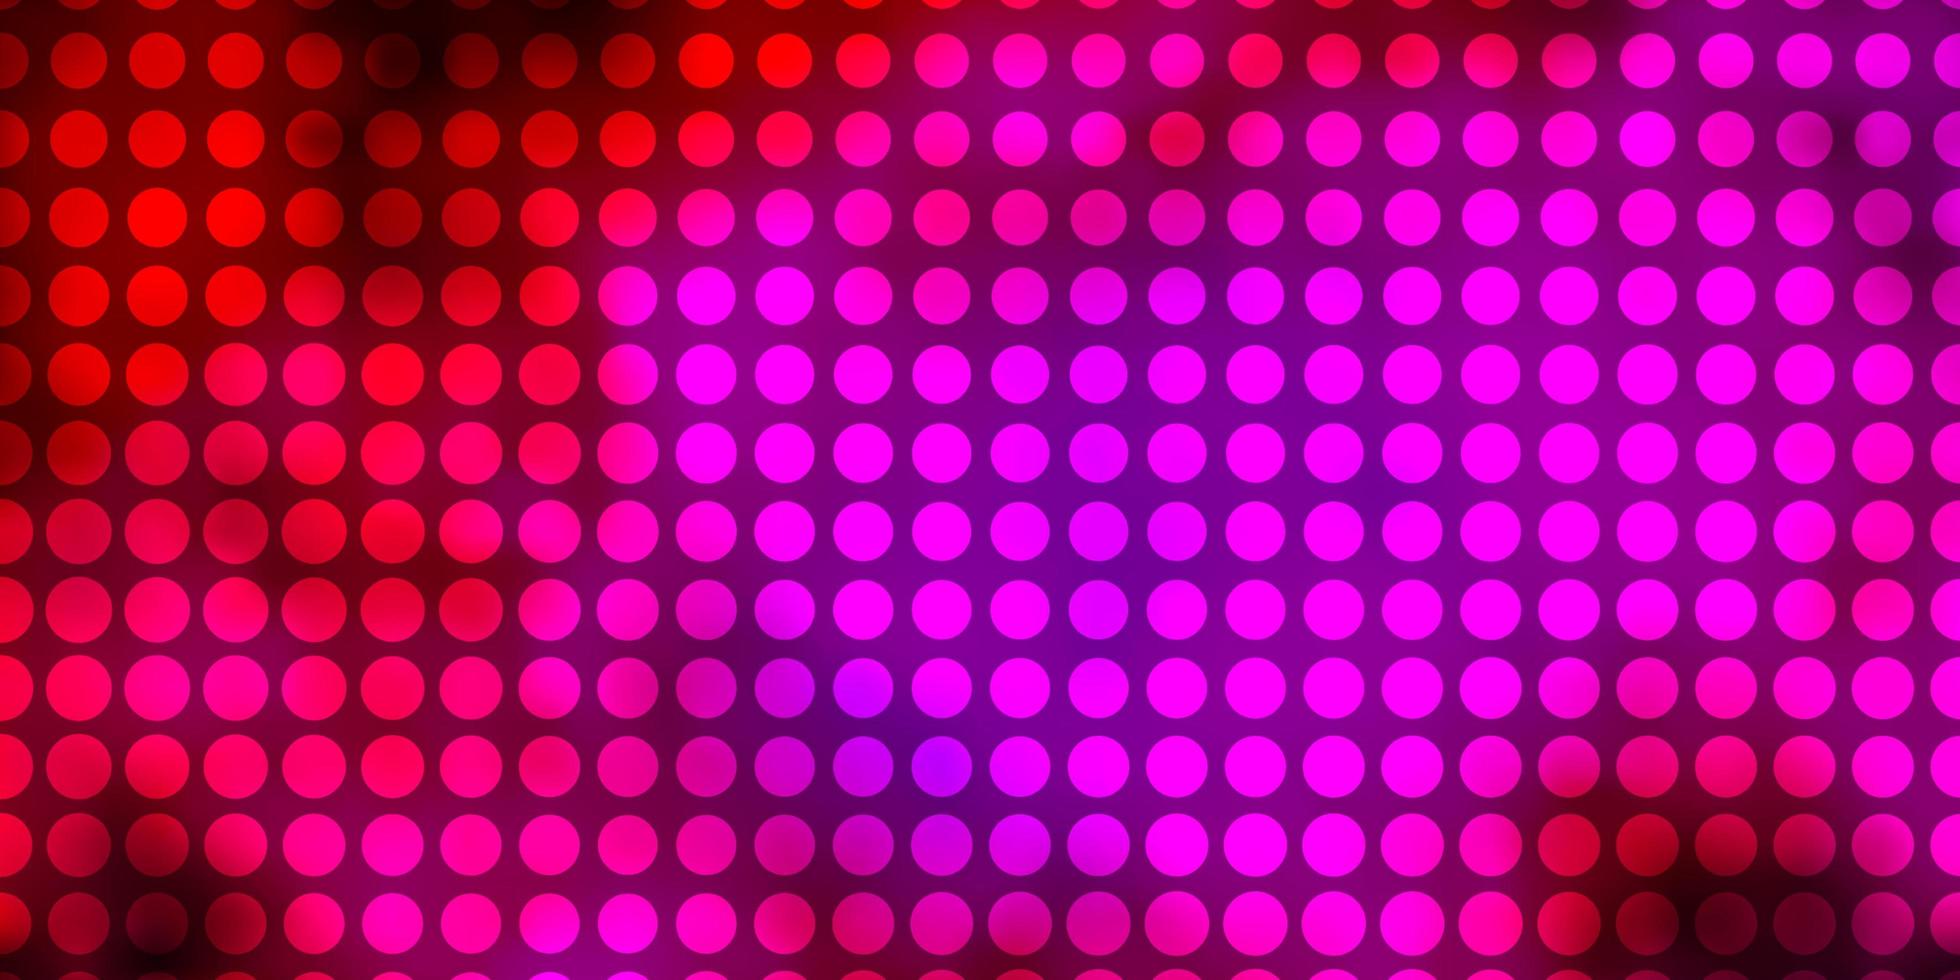 patrón de vector de color rosa oscuro con círculos.